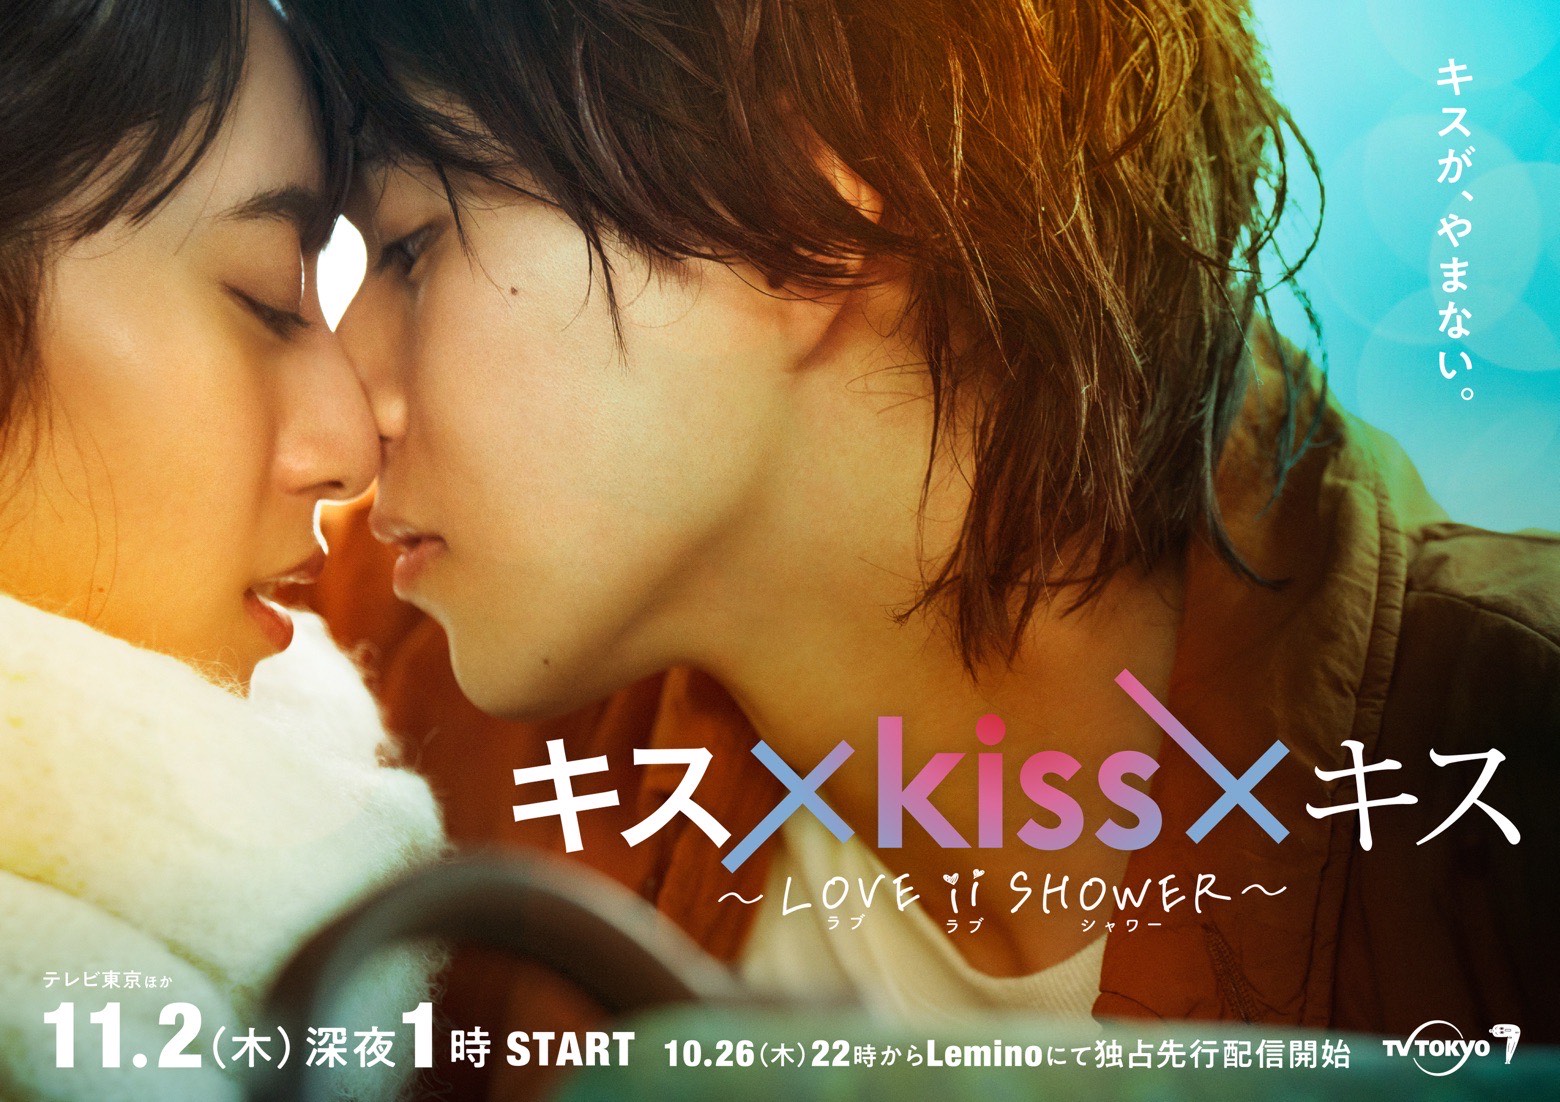 キス×kiss×キス～LOVE ⅱ SHOWER～」”最高のキスシーン”だけを映像化